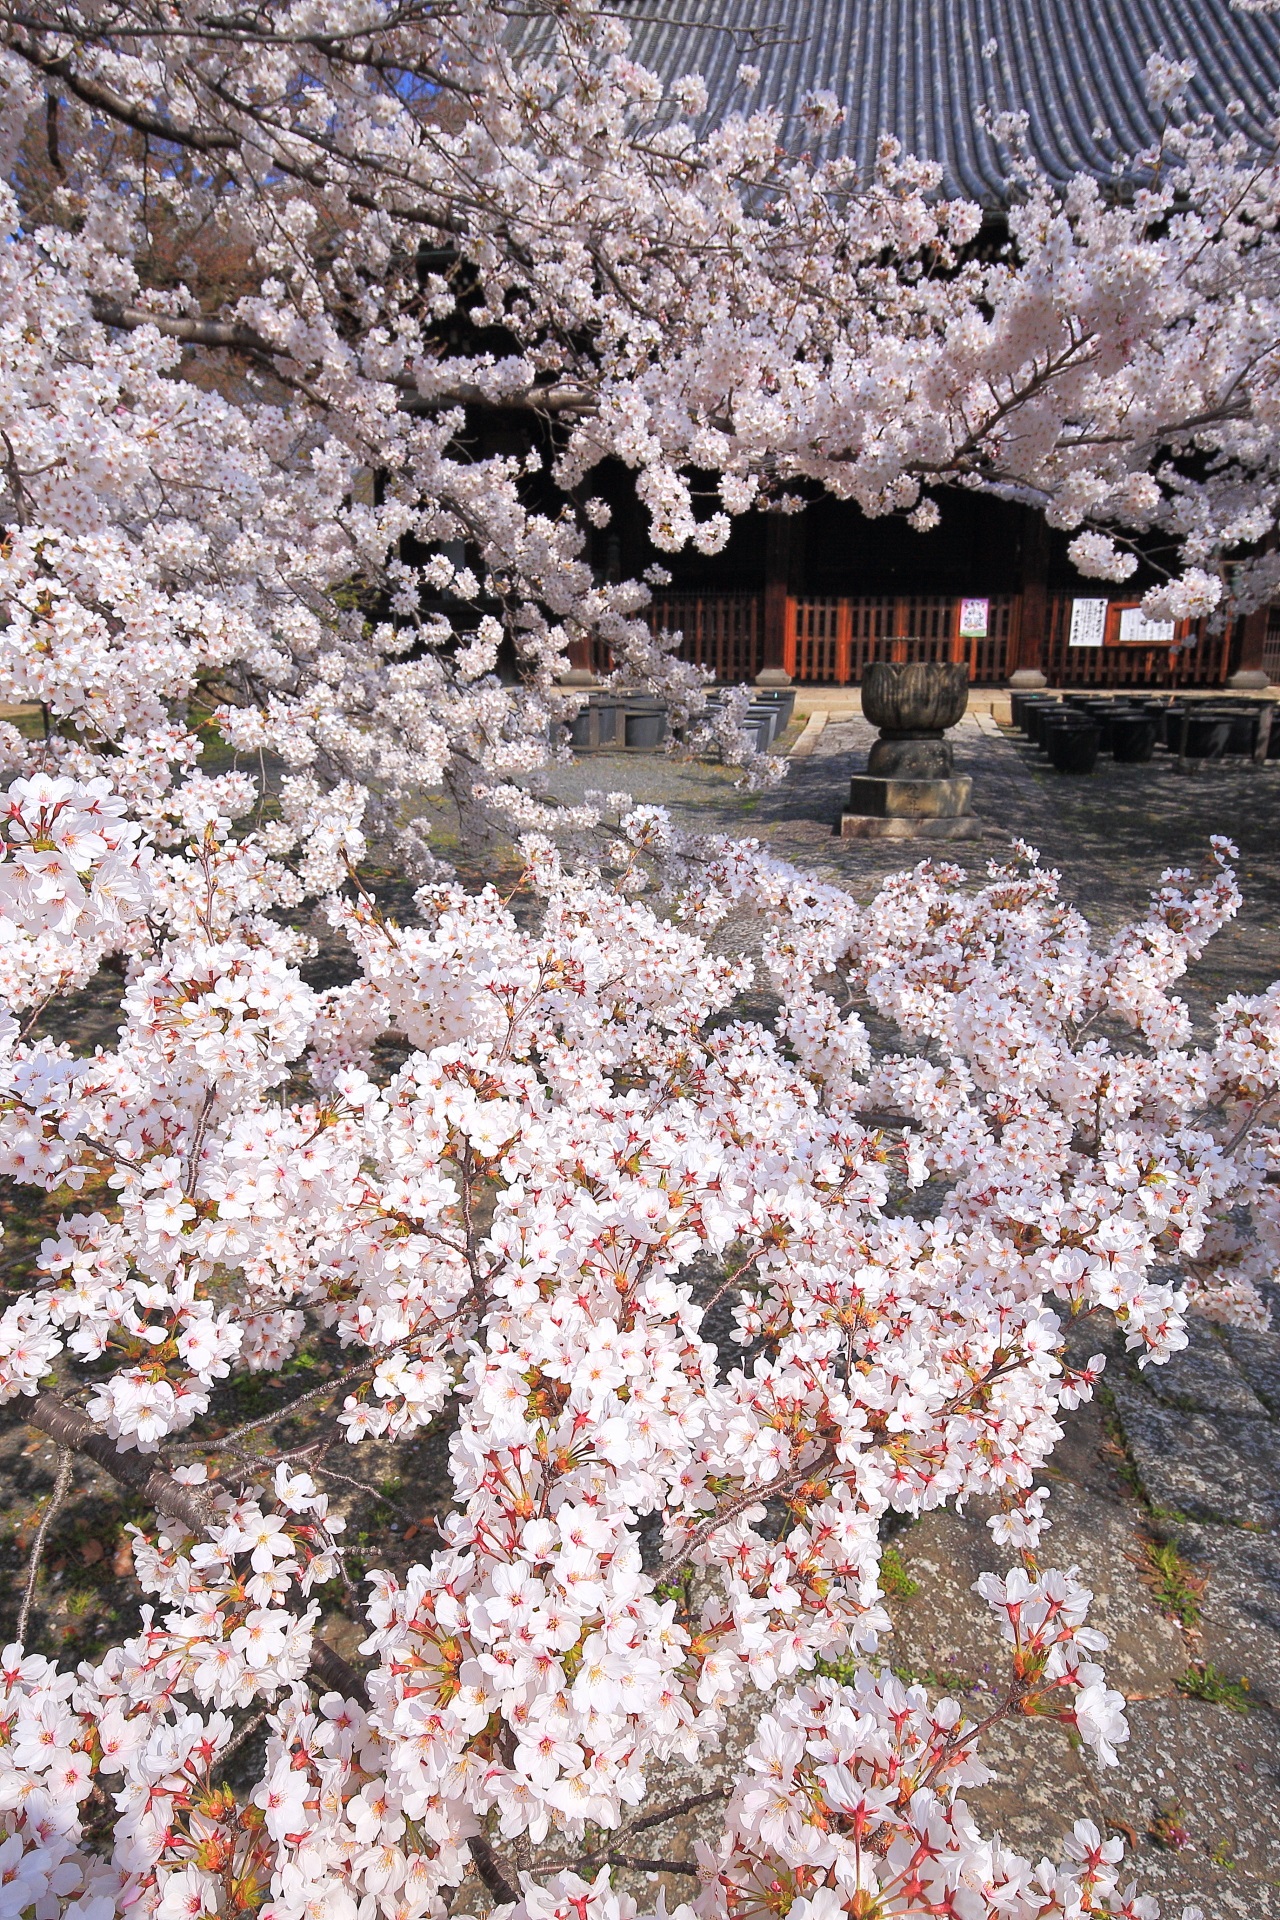 立本寺の溢れんばかりの圧巻の桜